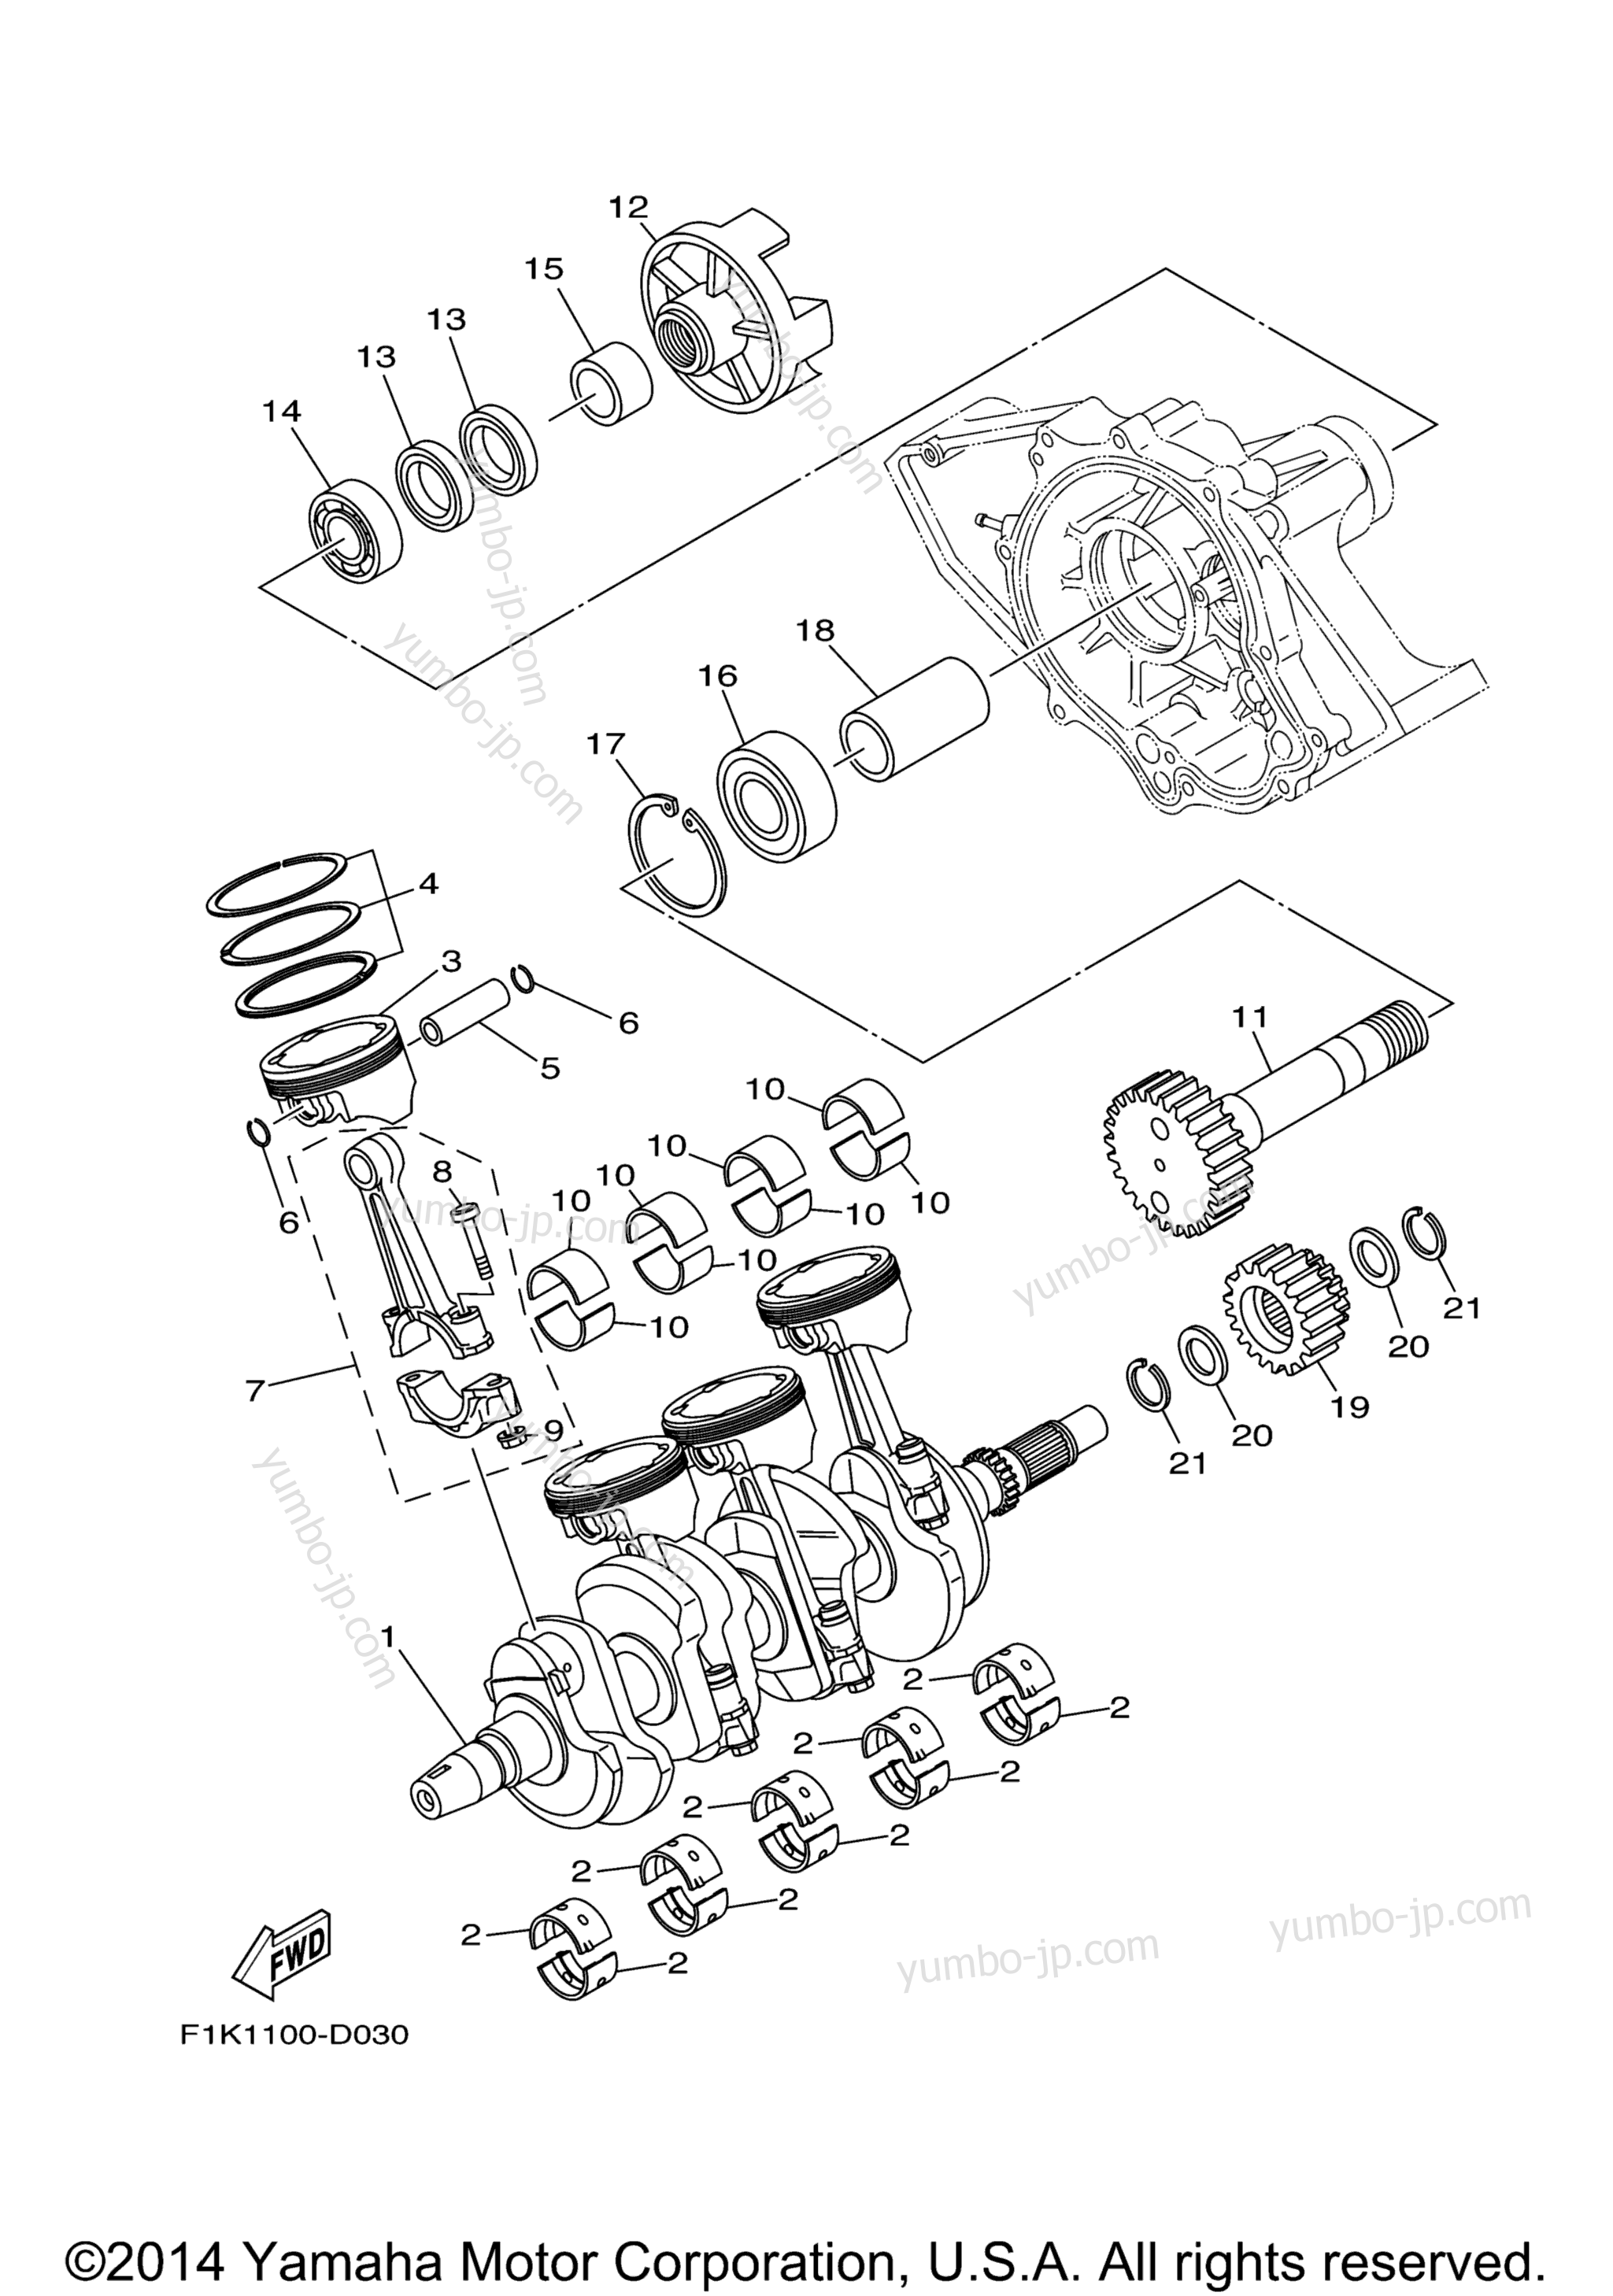 Crankshaft & Piston для катеров YAMAHA AR210 (FRT1100ALK) CA 2011 г.